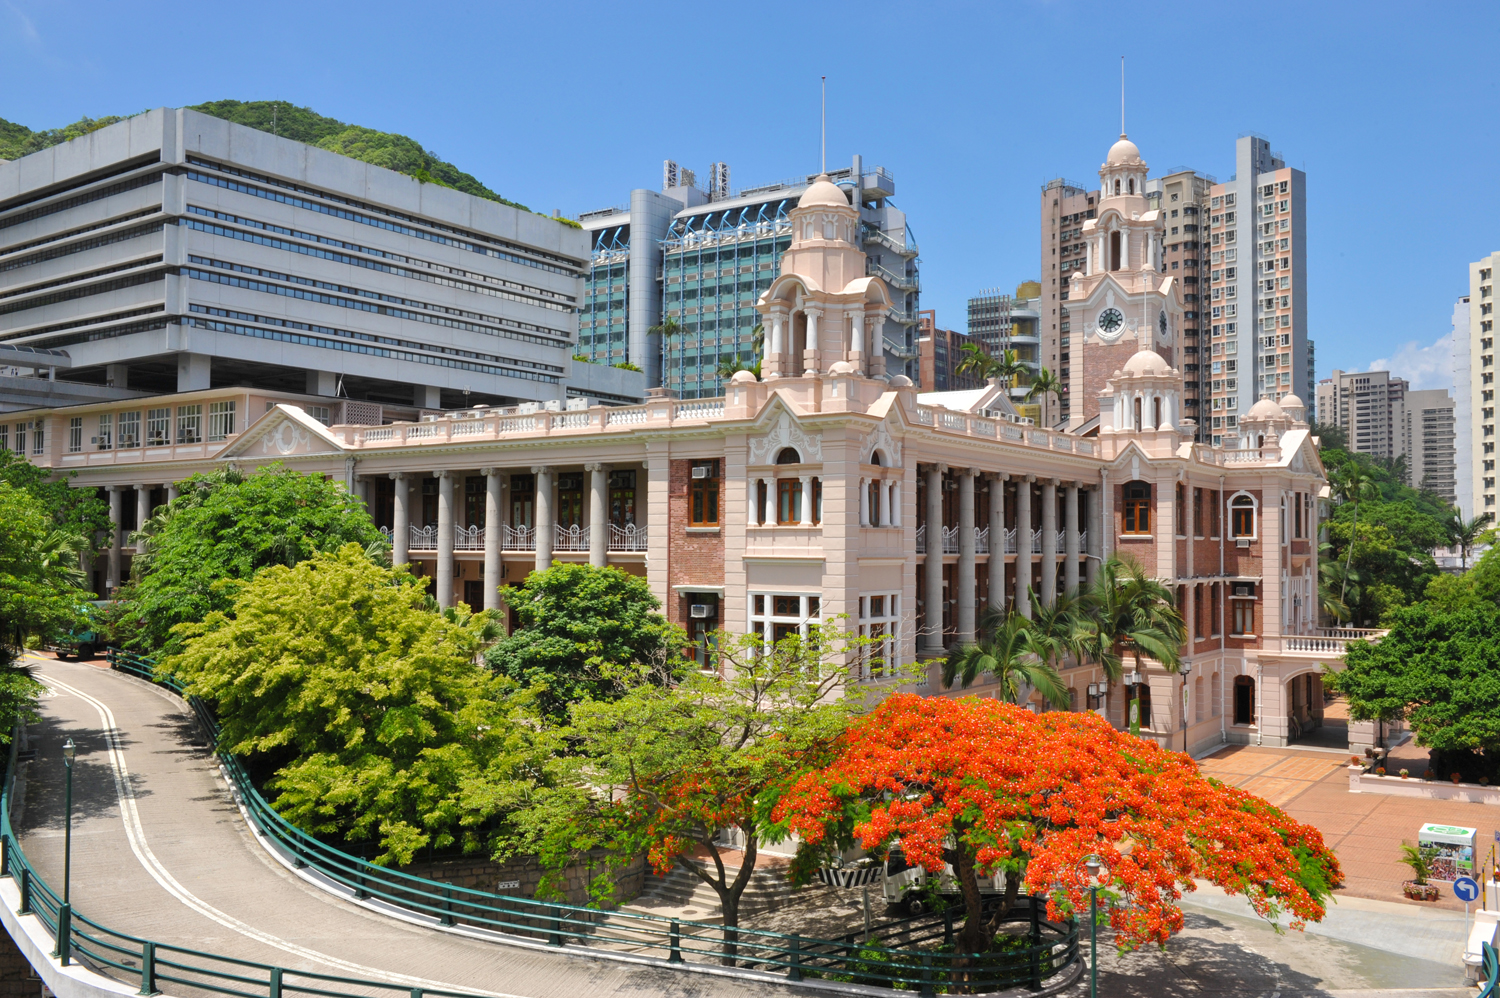 香港的大学校园中有哪些值得一看的风景？ - 知乎